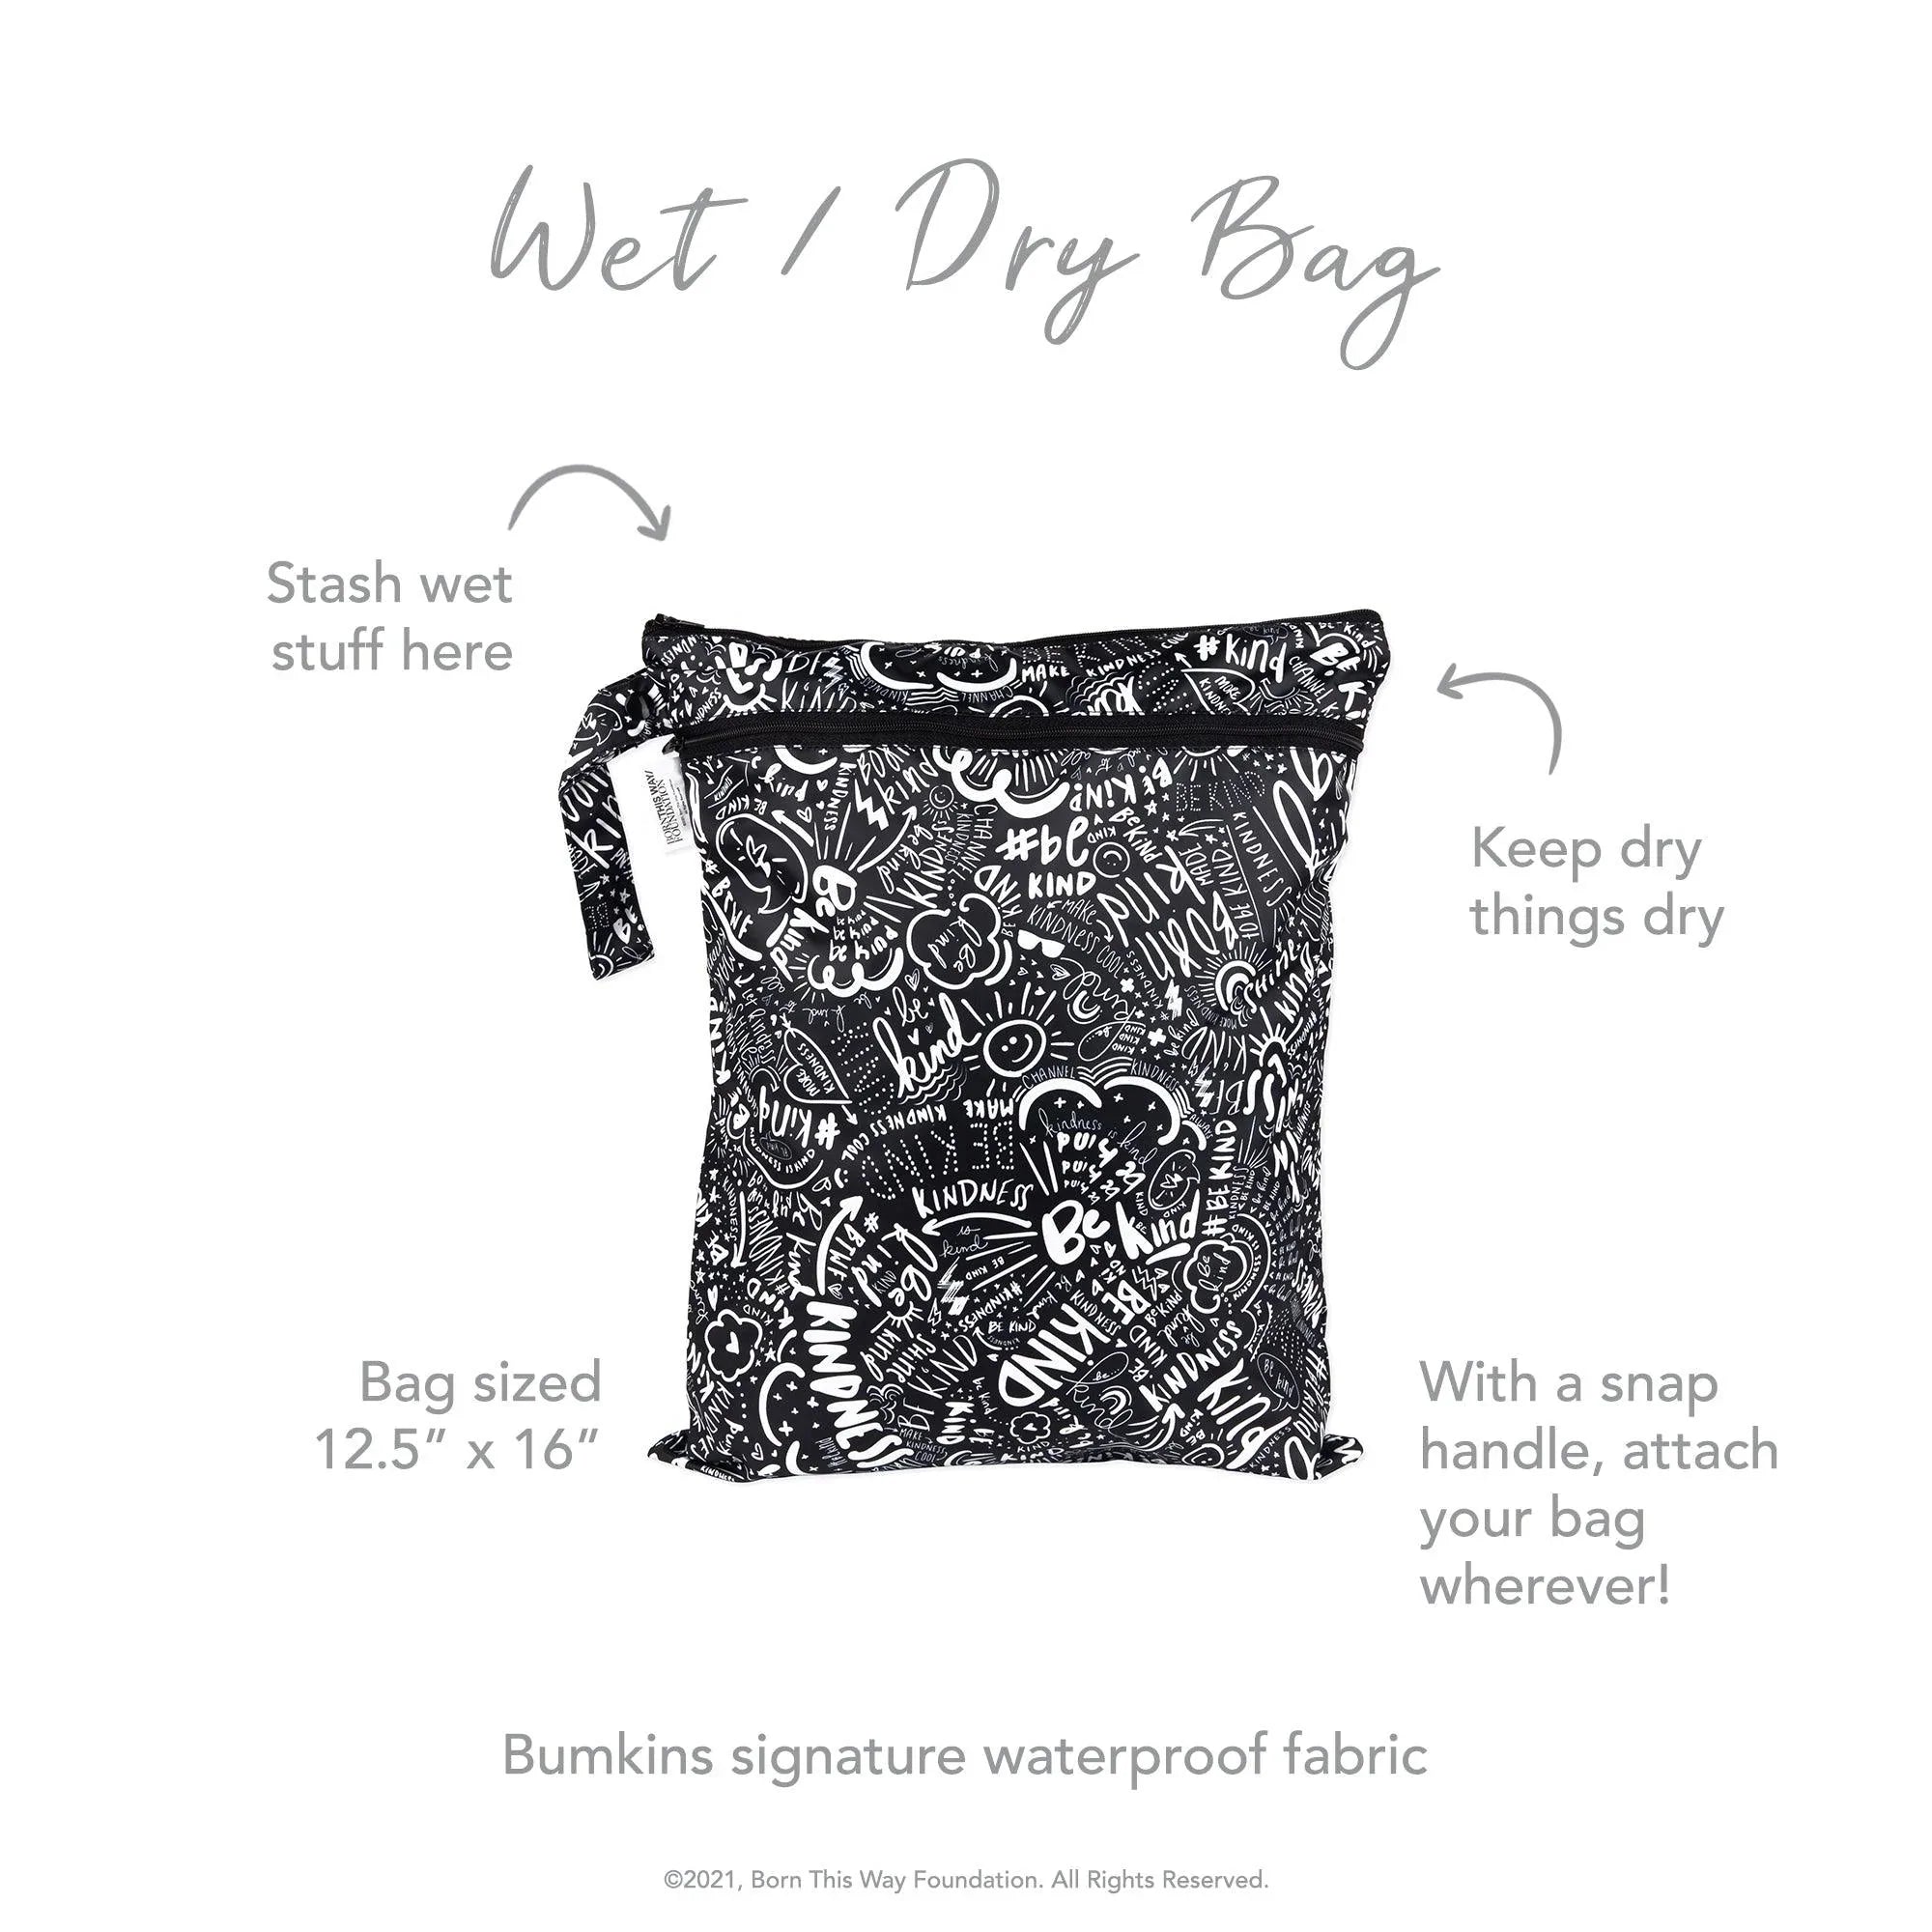 Wet / Dry Bag: Be Kind - Bumkins